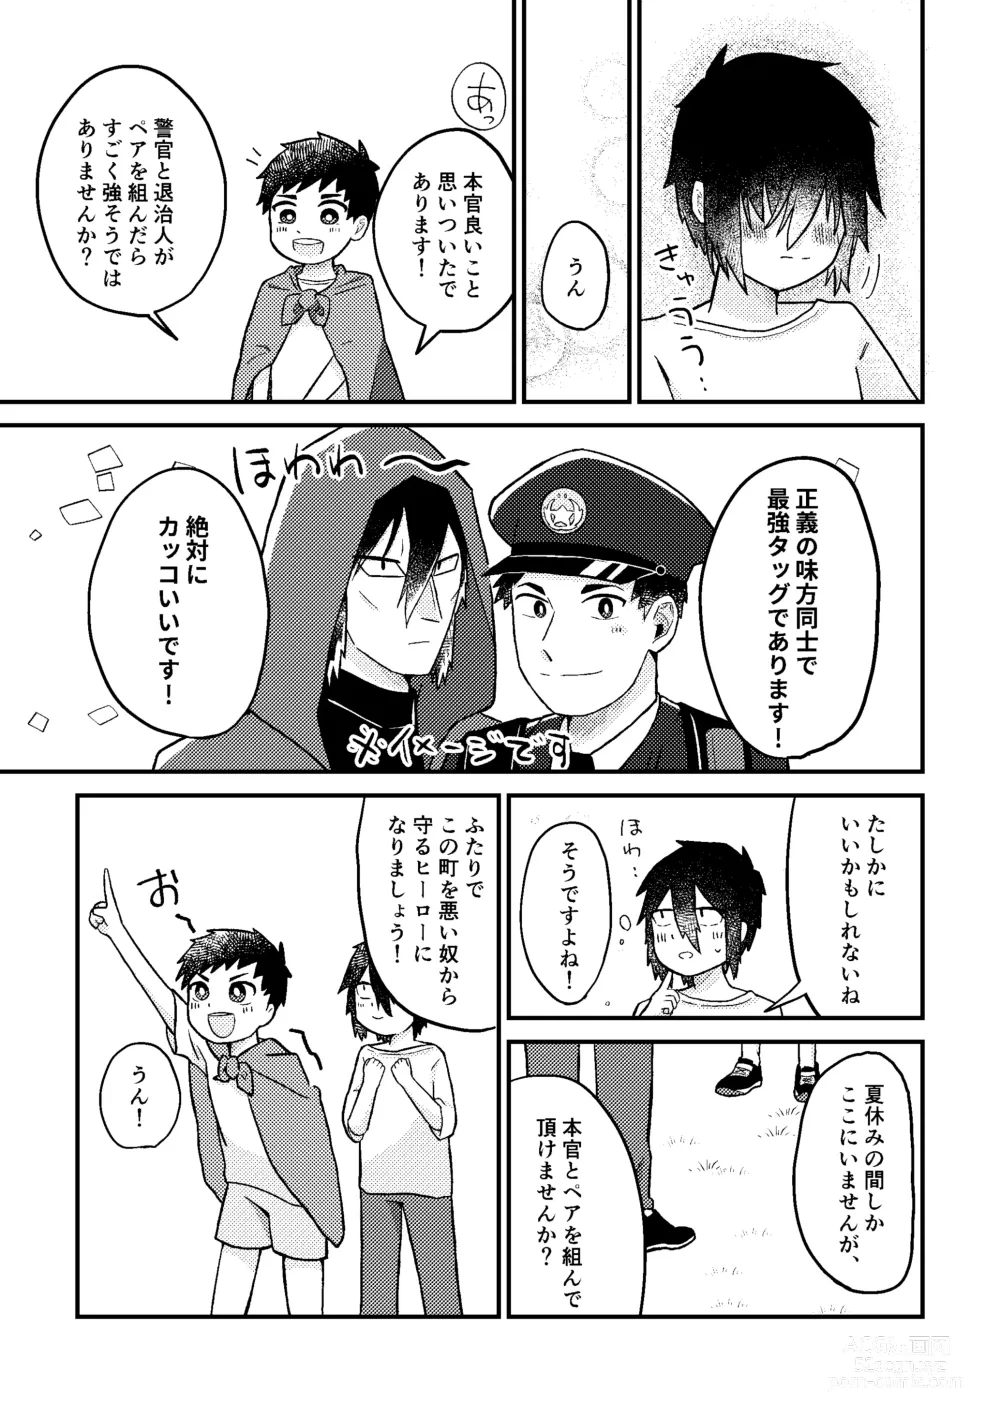 Page 14 of doujinshi Saigo no Natsuyasumi